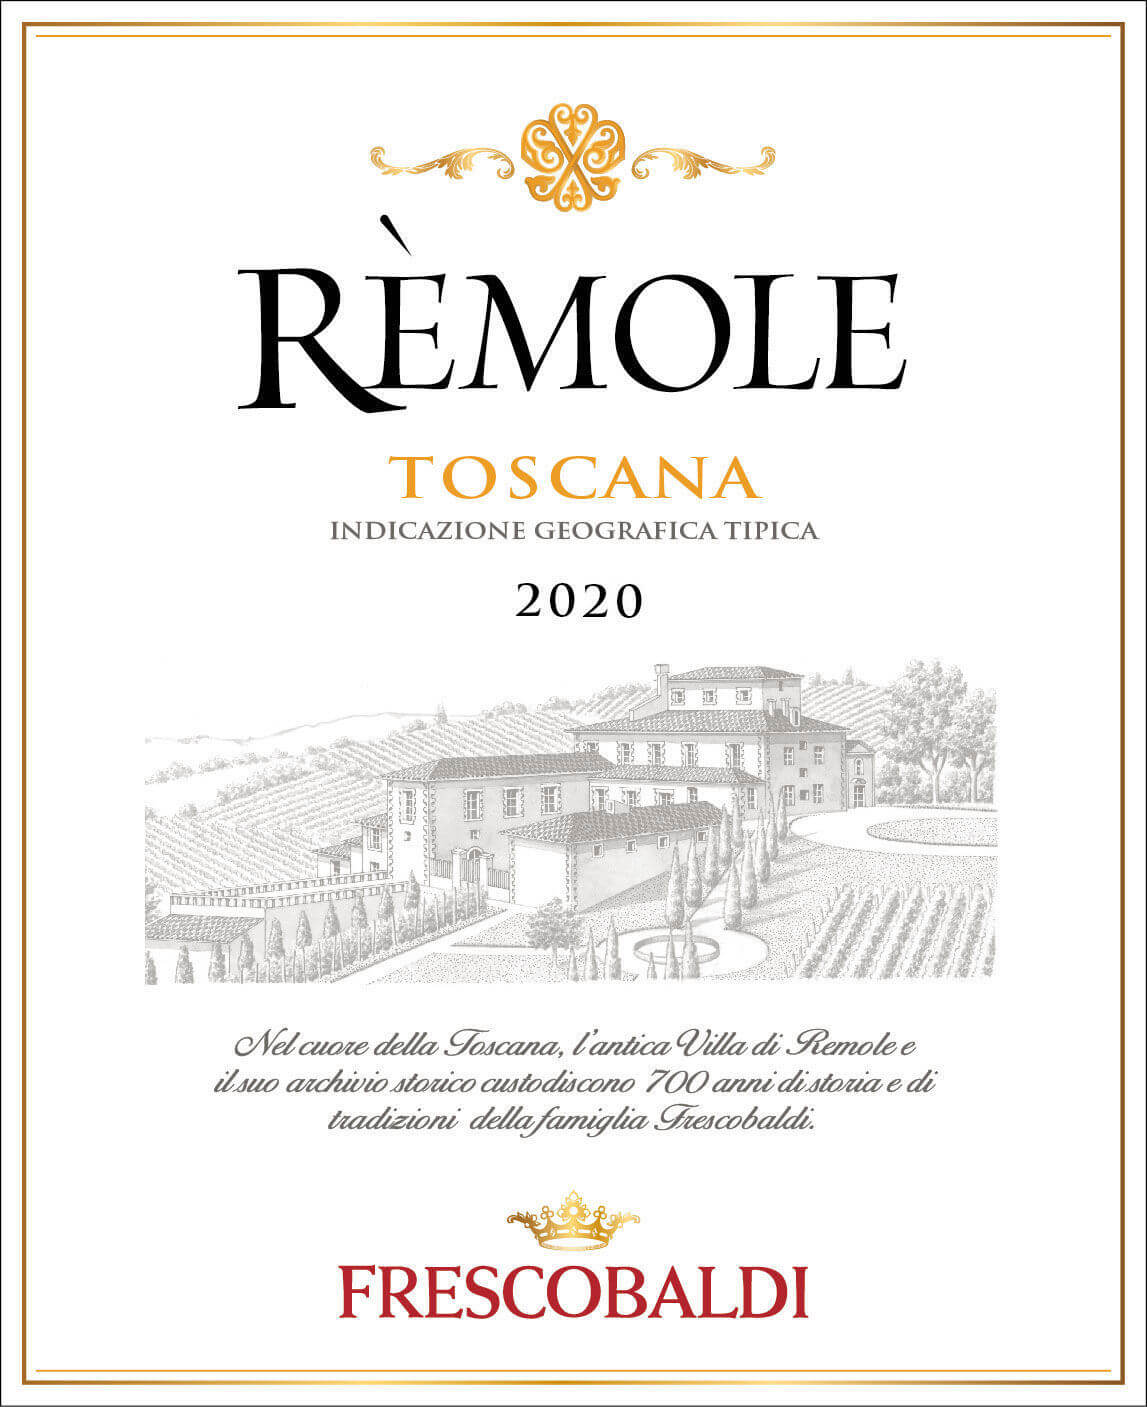 Bliv ophidset Skat Recite Frescobaldi - Rèmole Bianco Frescobaldi, Rèmole, Toscana IGT, White wine